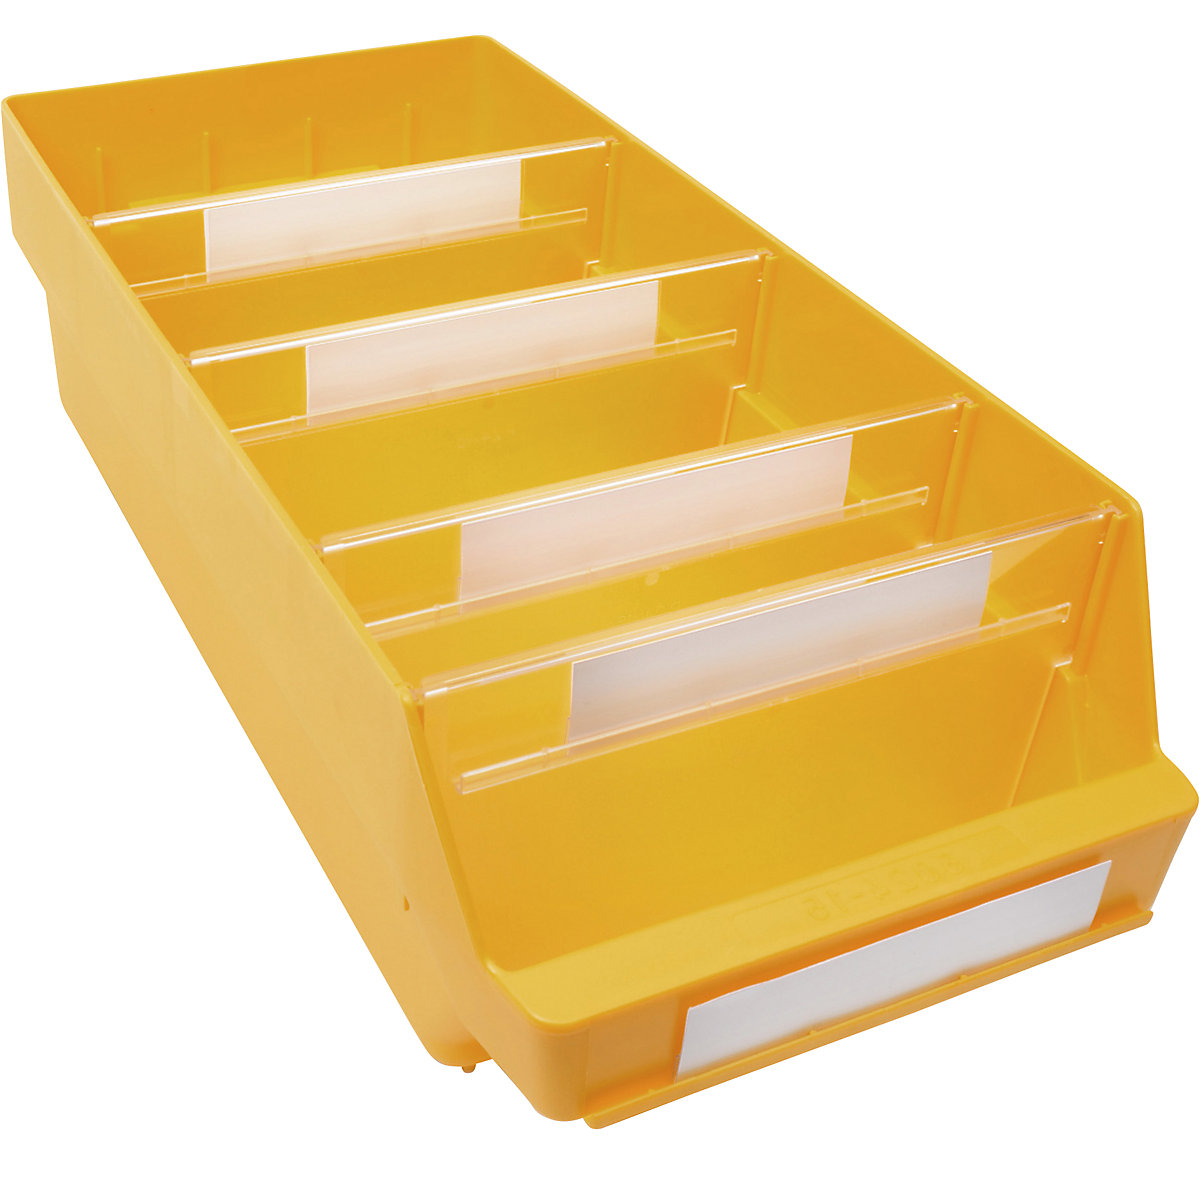 Cassettina per scaffali in polipropilene ad alta resistenza – STEMO, giallo, lungh. x largh. x alt. 500 x 240 x 150 mm, conf. da 10 pezzi-7